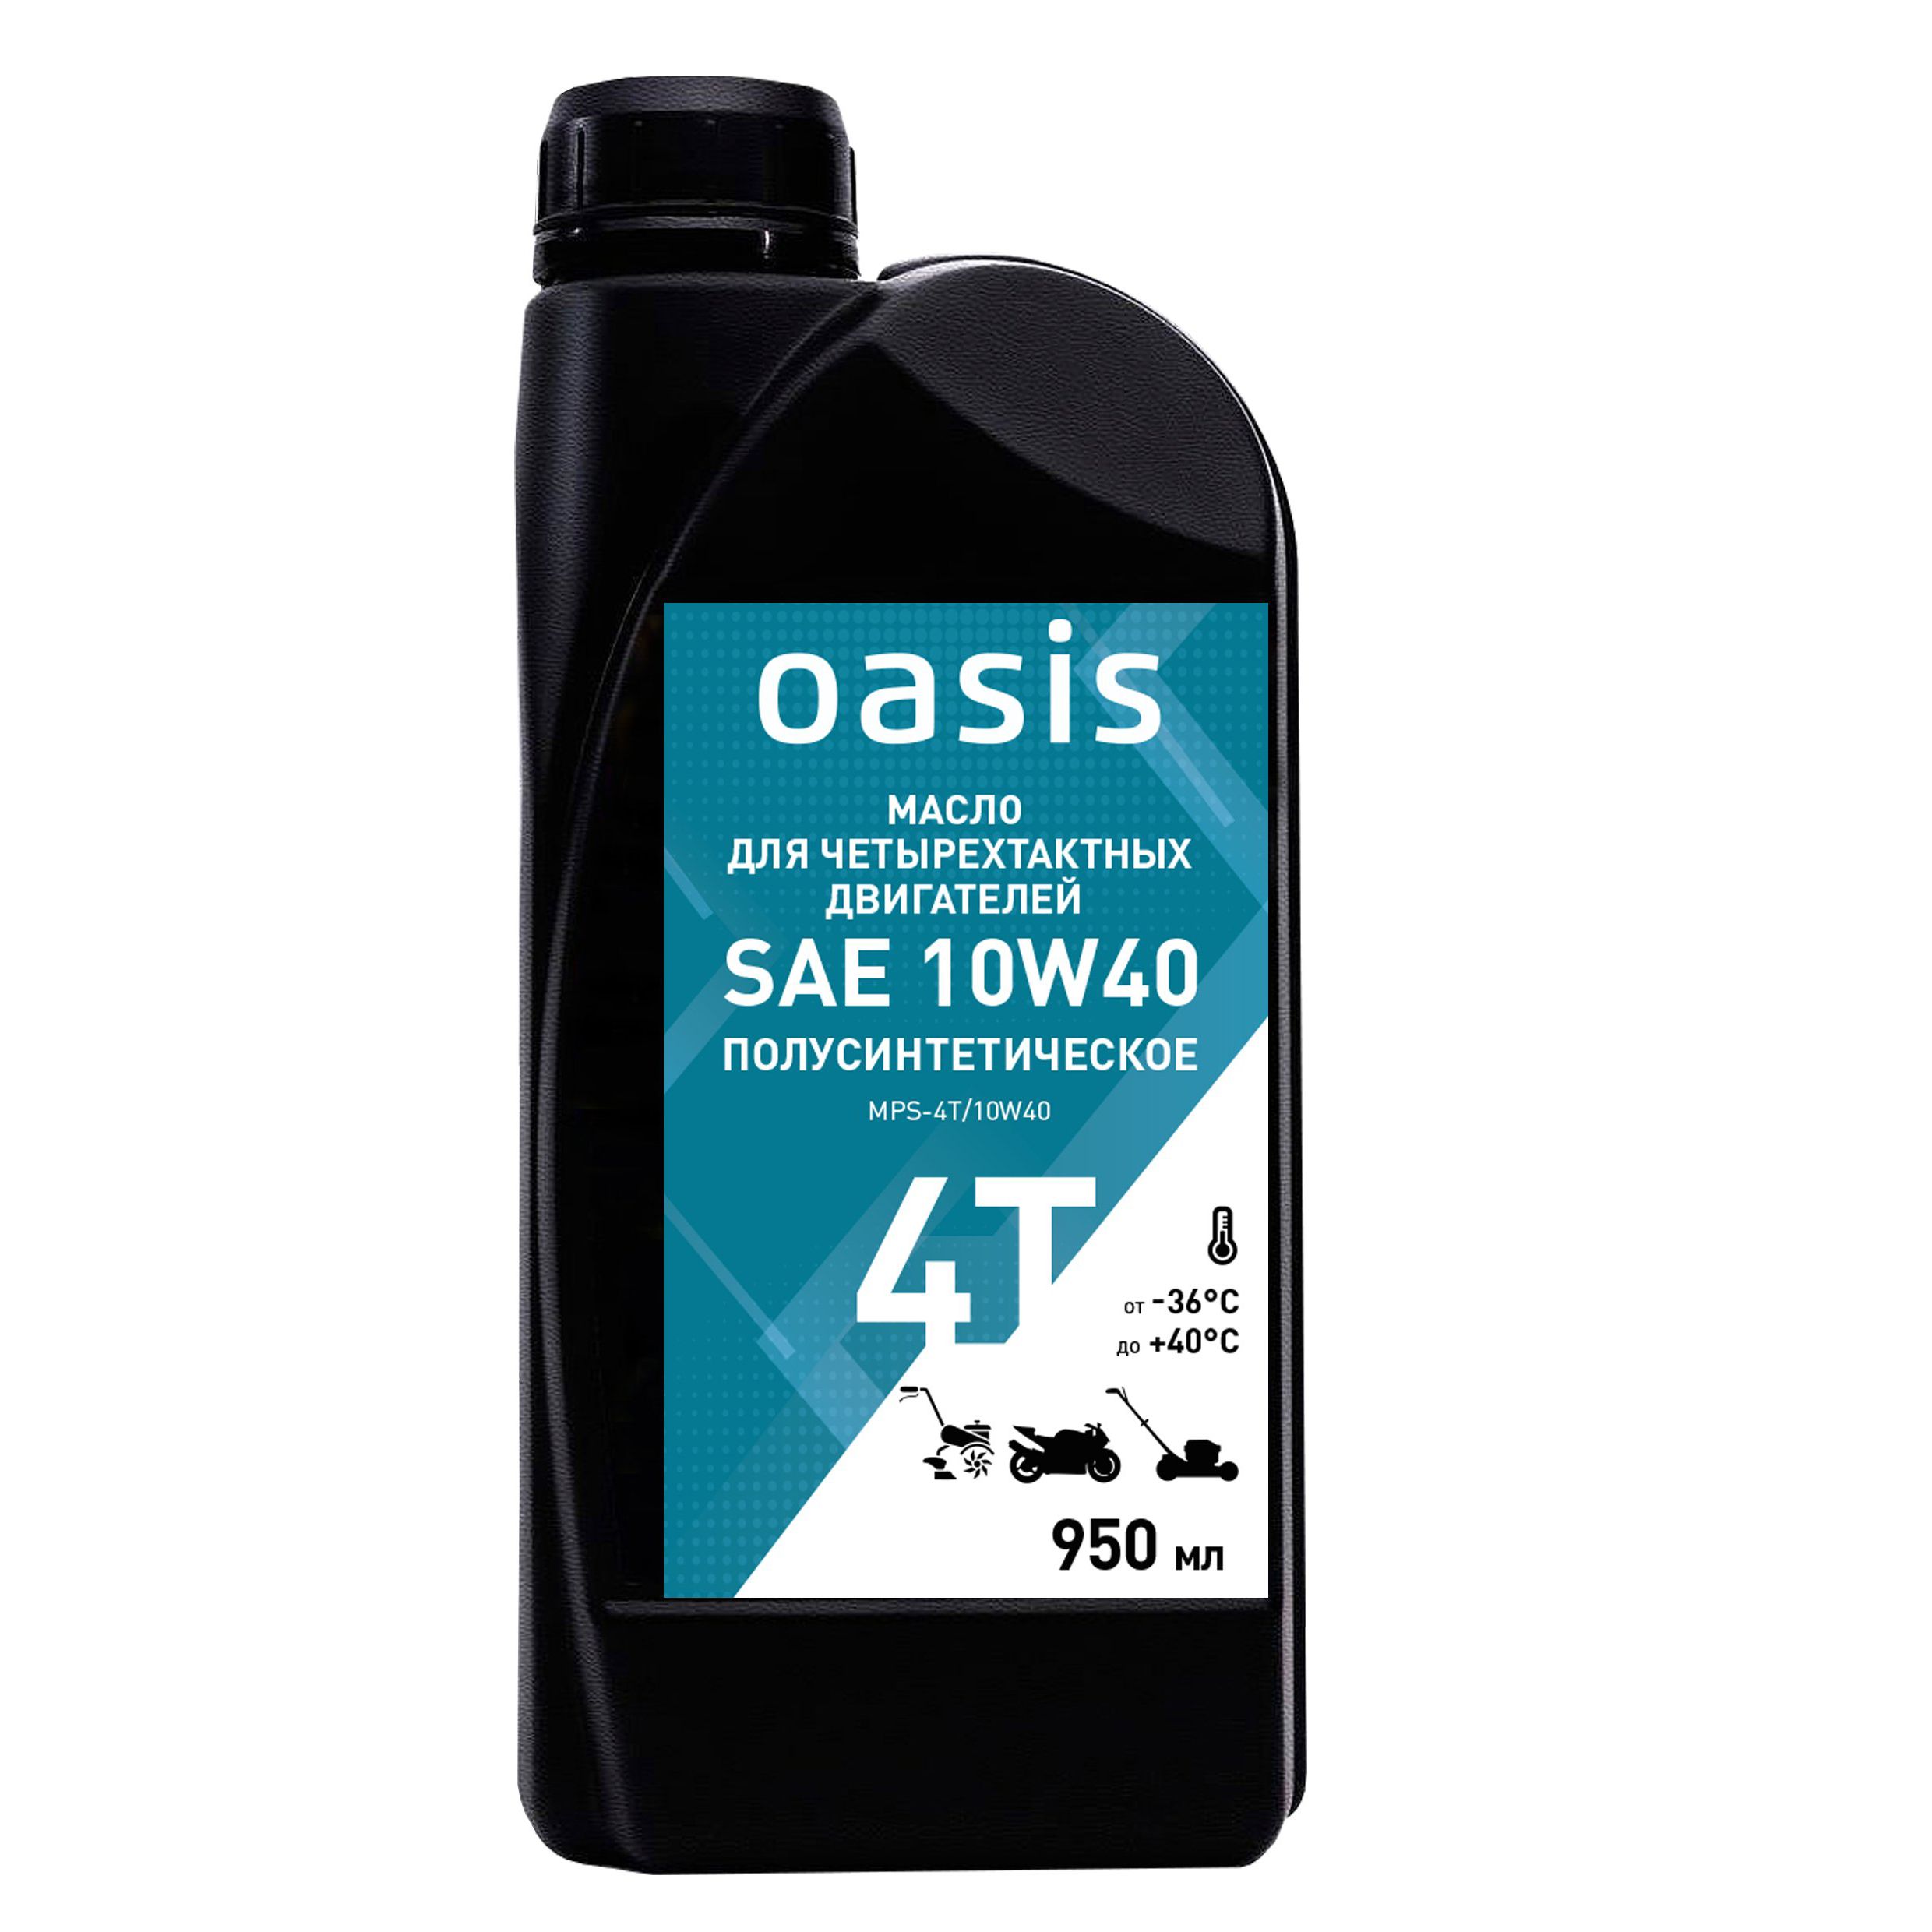 Масло для 4-тактных двигателей полусинтетическое SAE 10W40 Oasis MPS-4T/10W40...OASIS 4640130950514